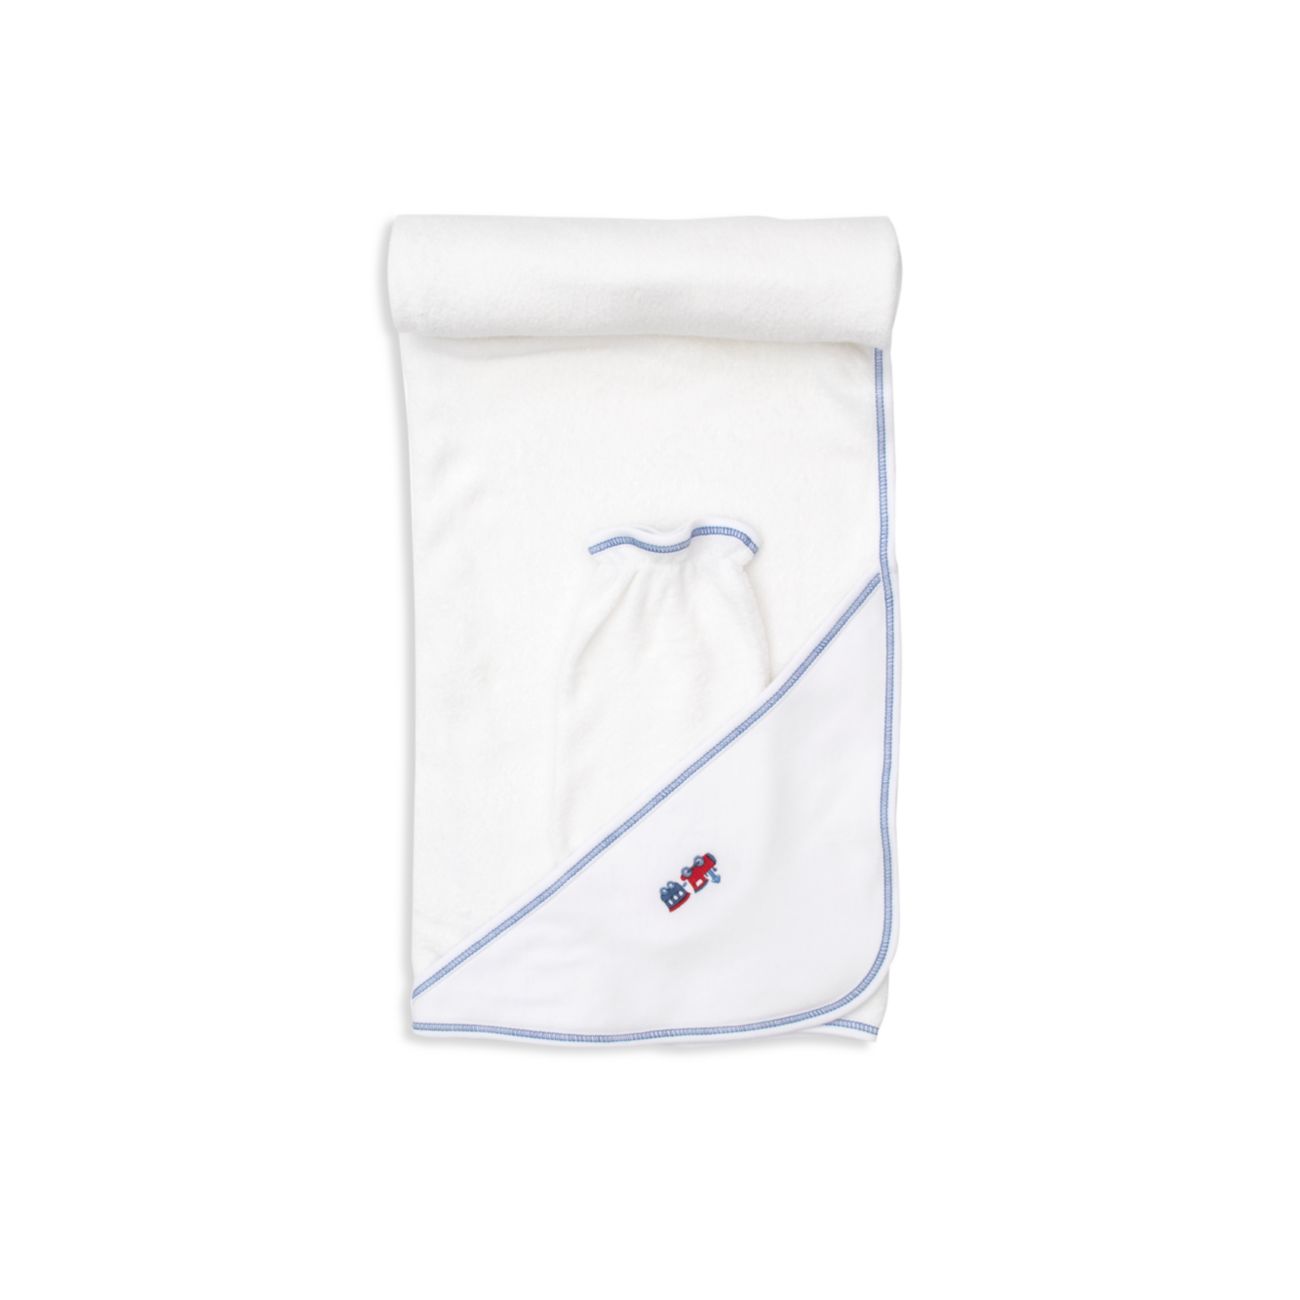 Двухкомпонентное полотенце с капюшоном для мальчиков и девочек «Железнодорожный поезд». Набор для мытья рук Kissy Kissy